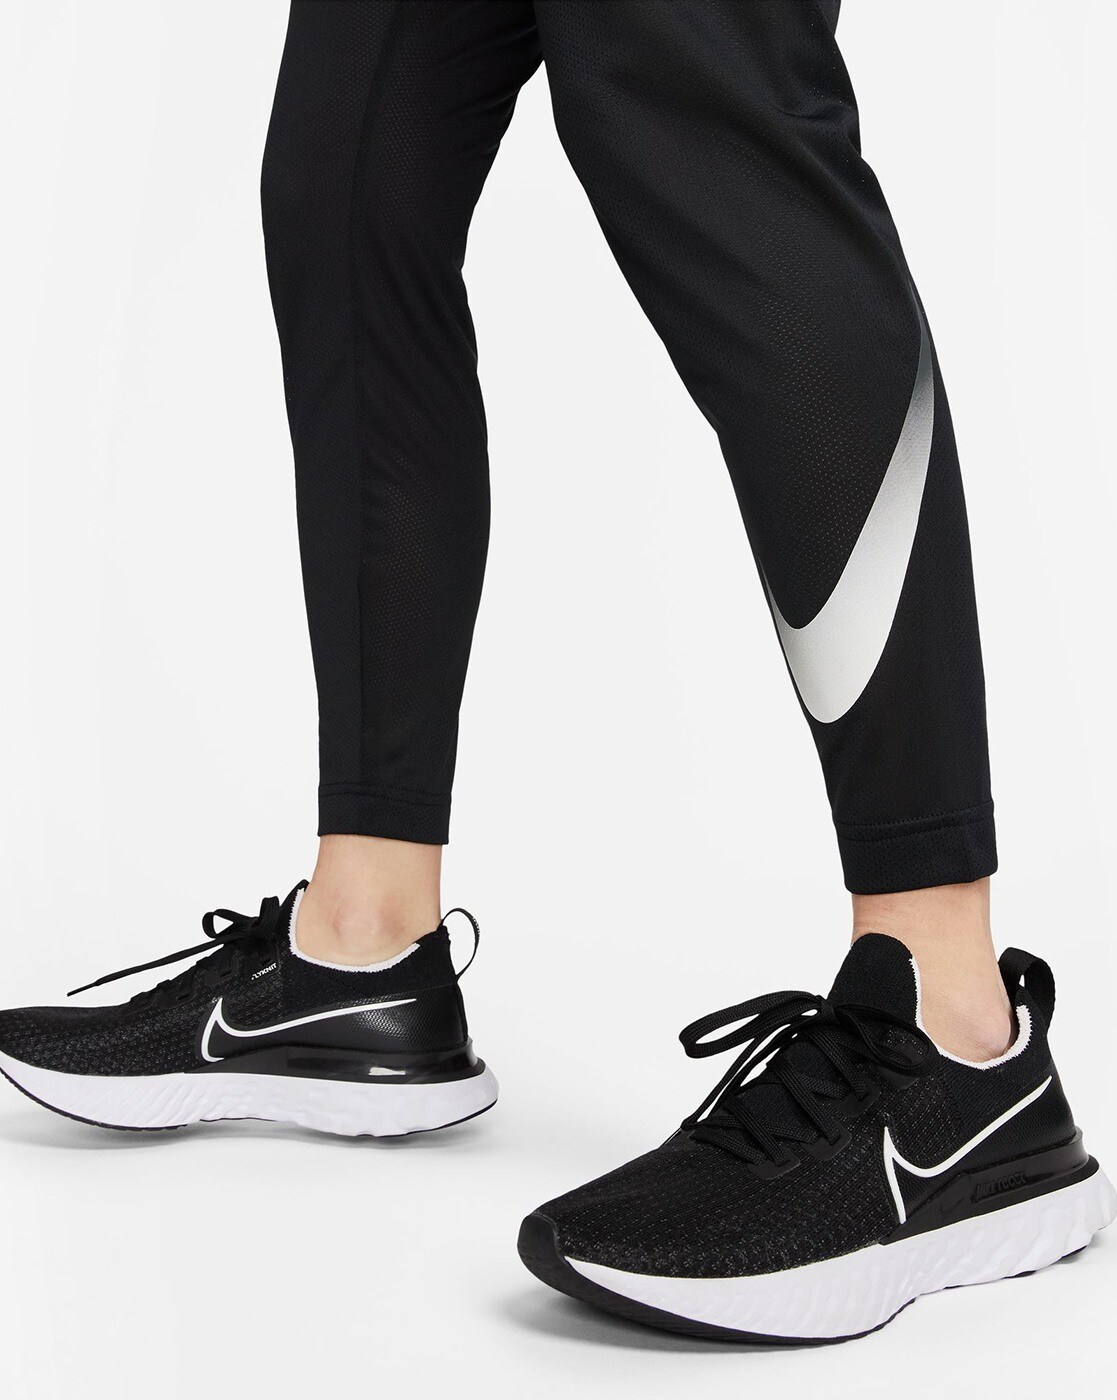 Nike Womens Pro Cool Light Streak Print Training Capri Pants  (Black/Black/White, Small)